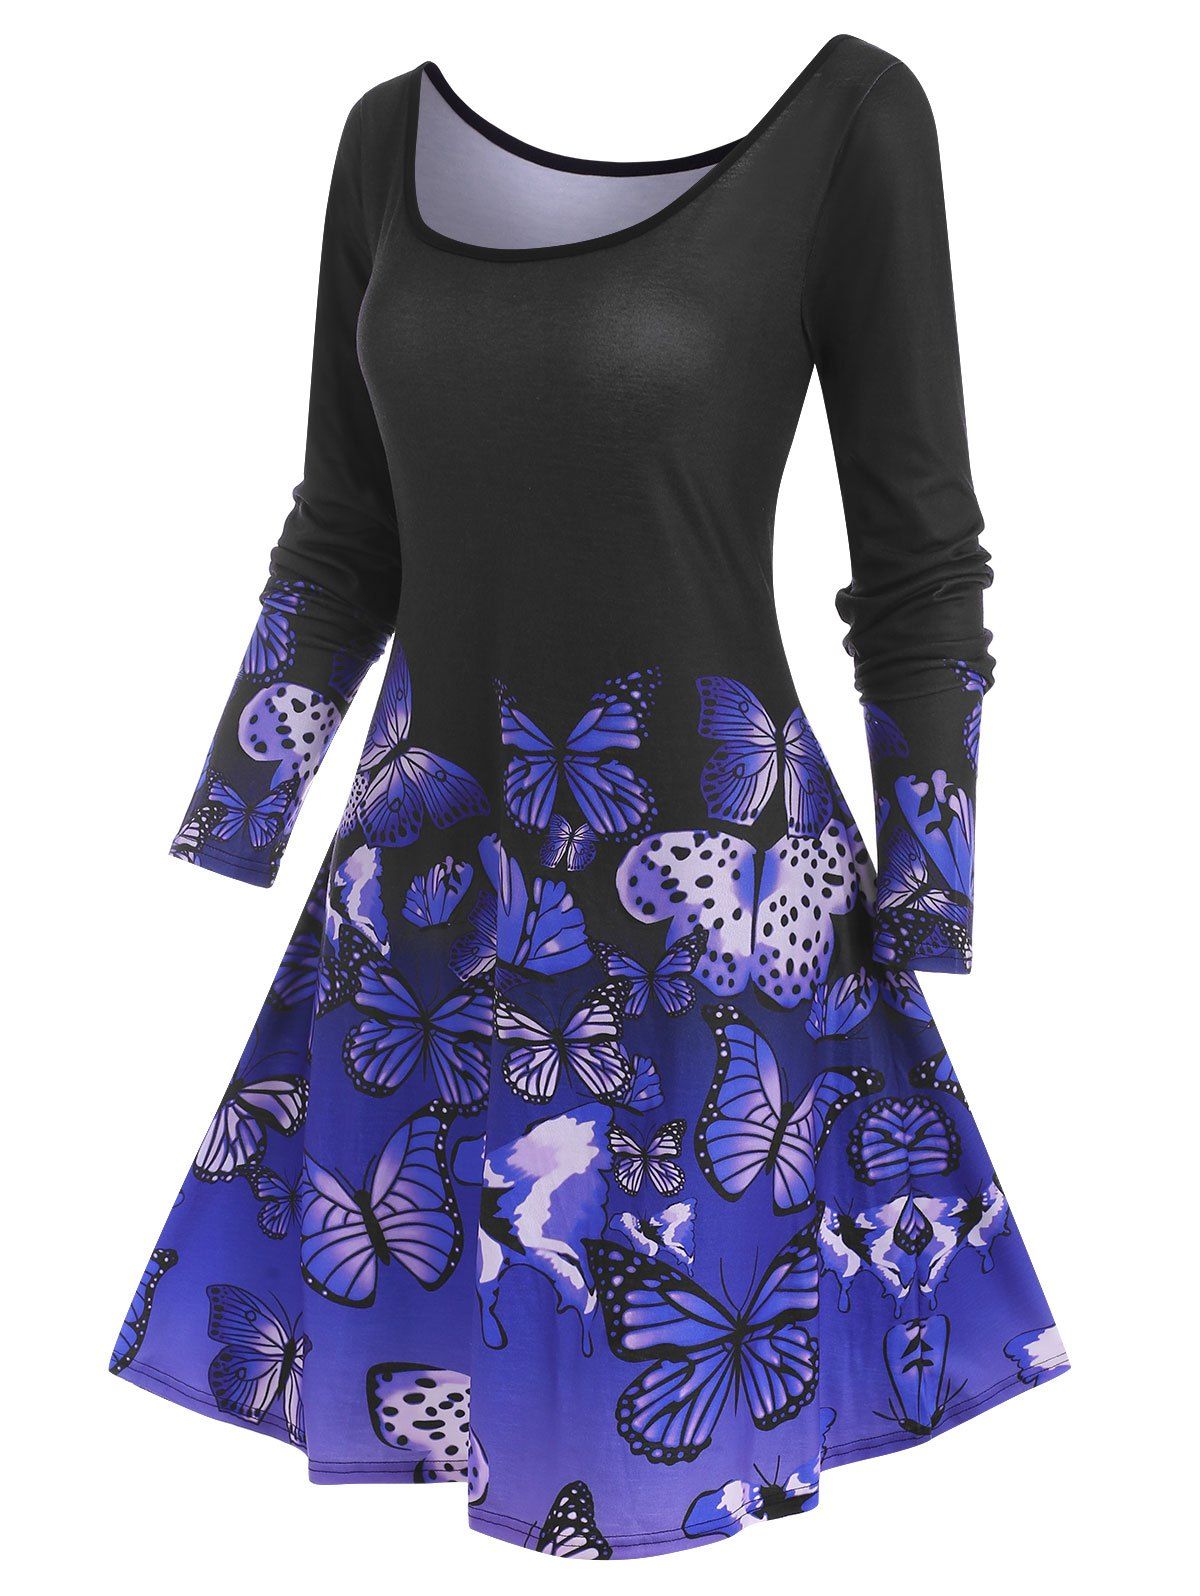 Long Sleeve Butterfly Print Tee Dress - PURPLE L